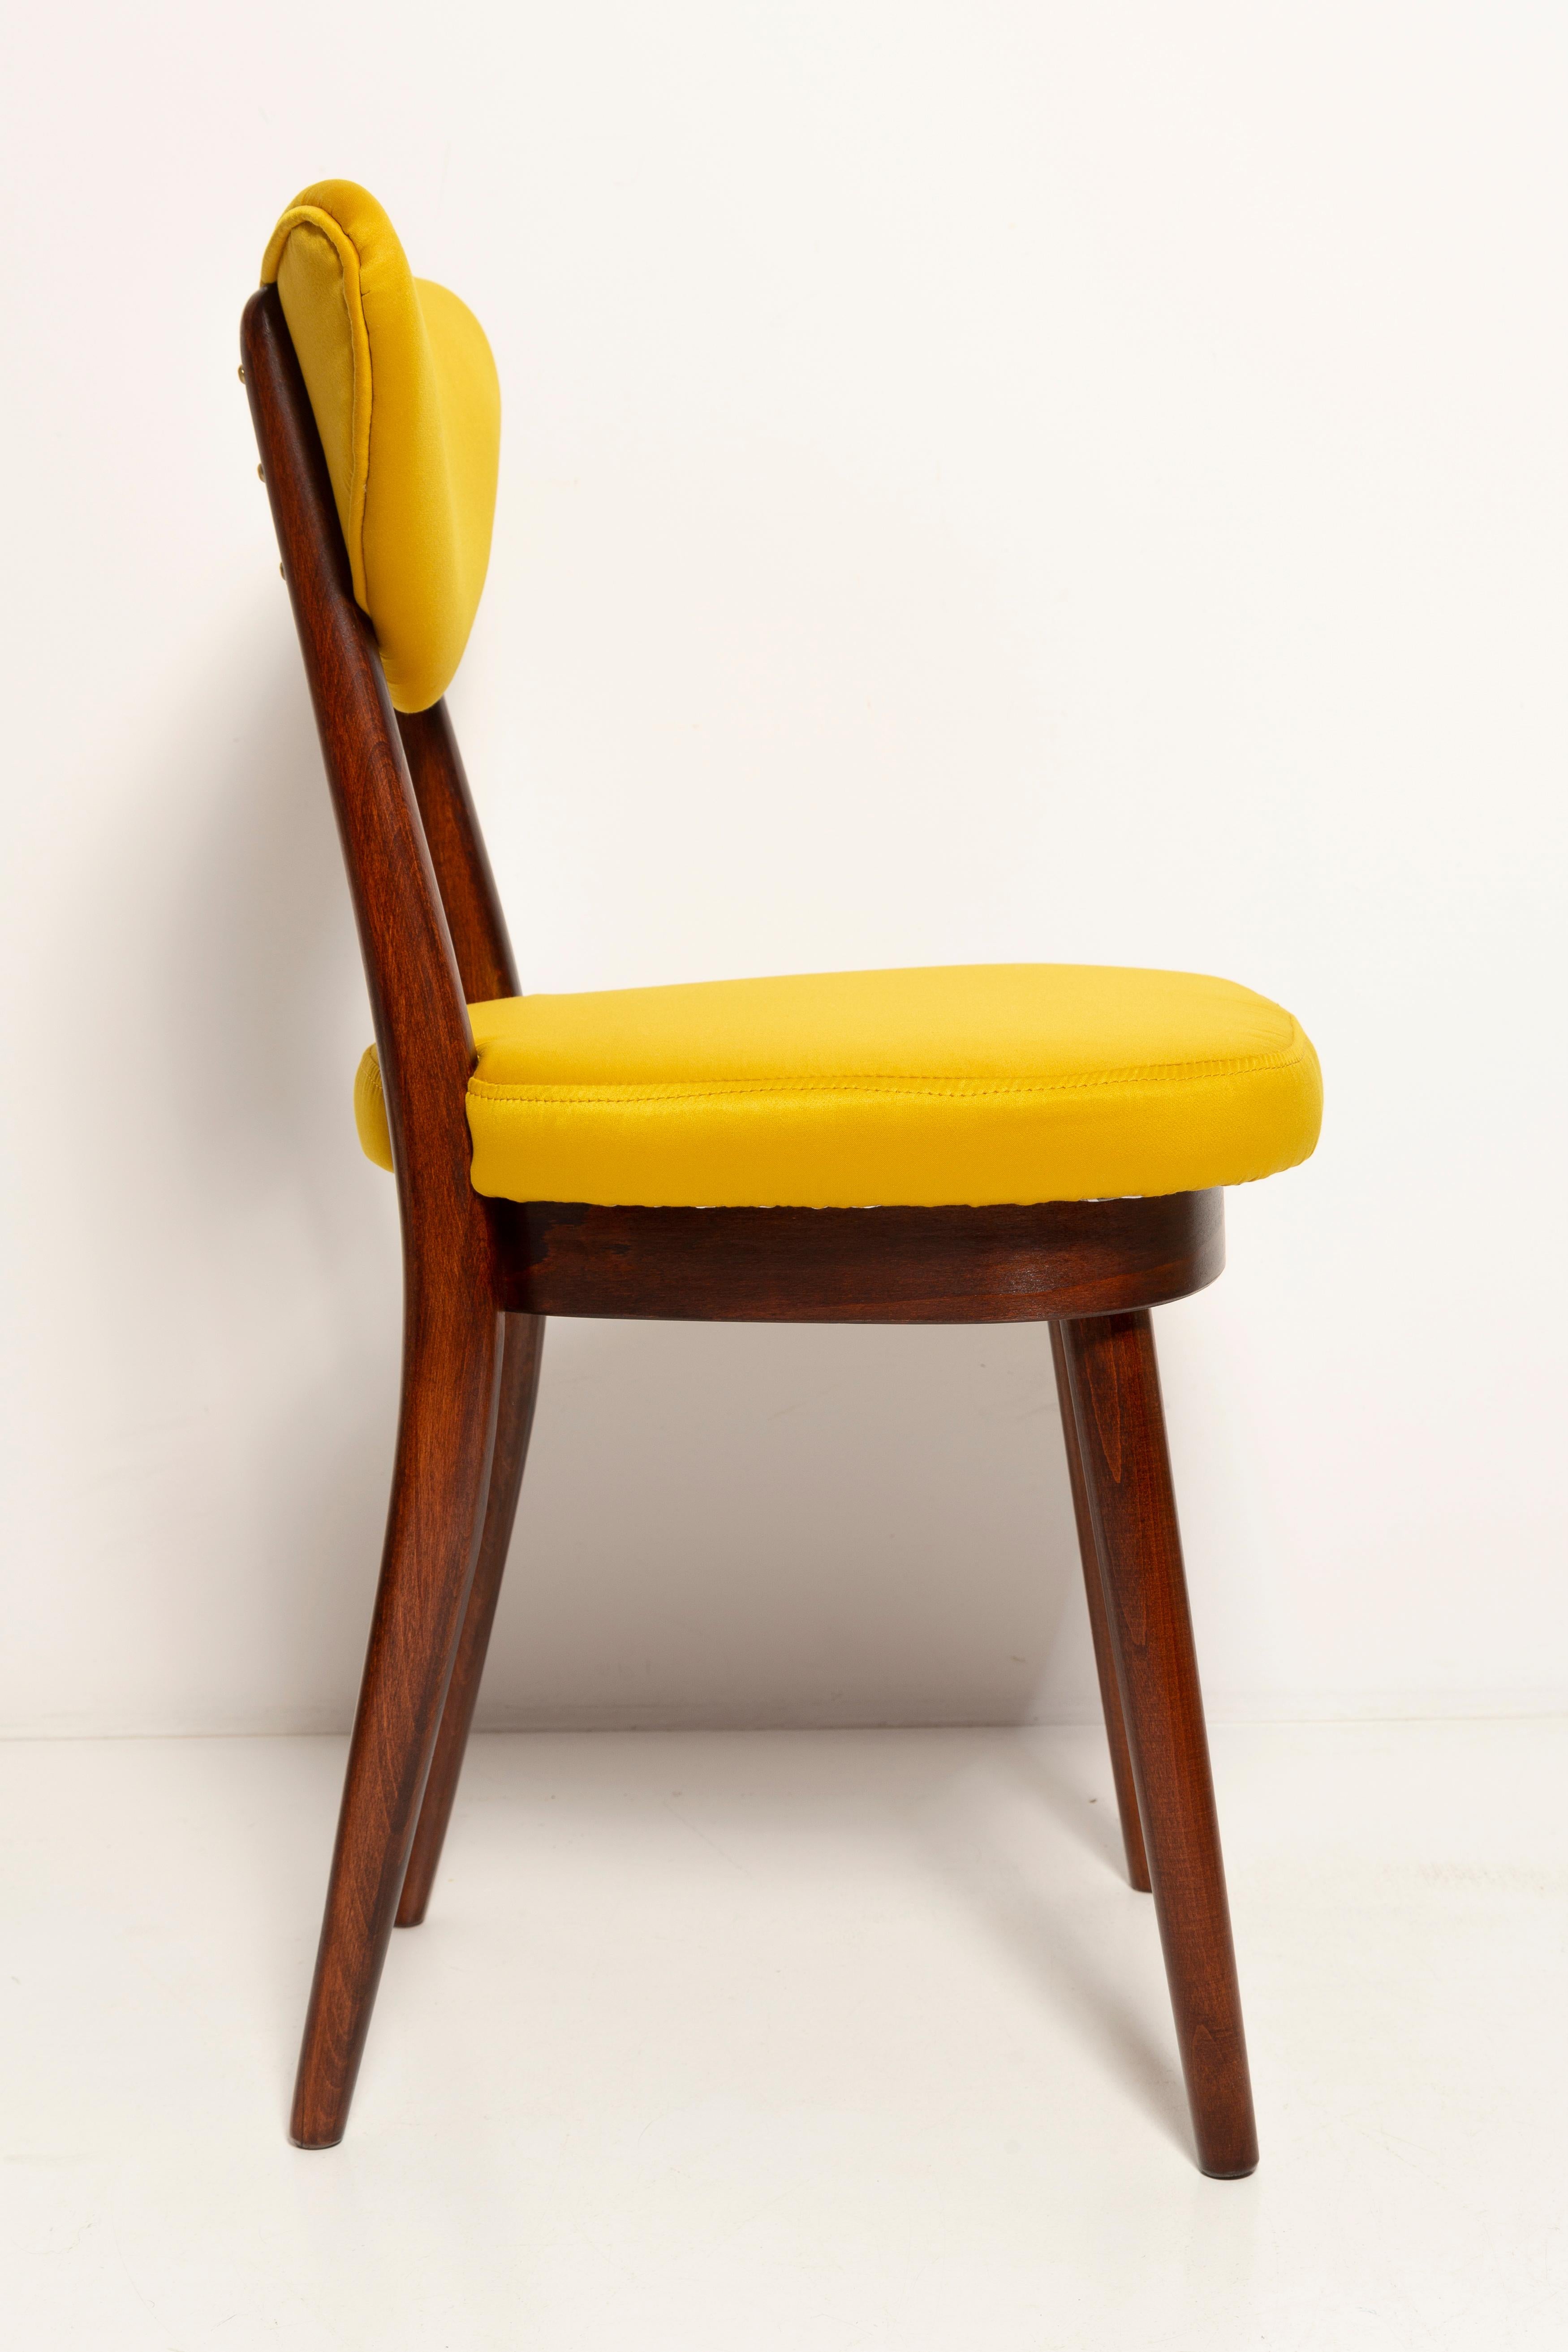 Velvet Midcentury Heart Chair in Yellow Satin Dedar Gildo Fabric, Europe, 1960s For Sale